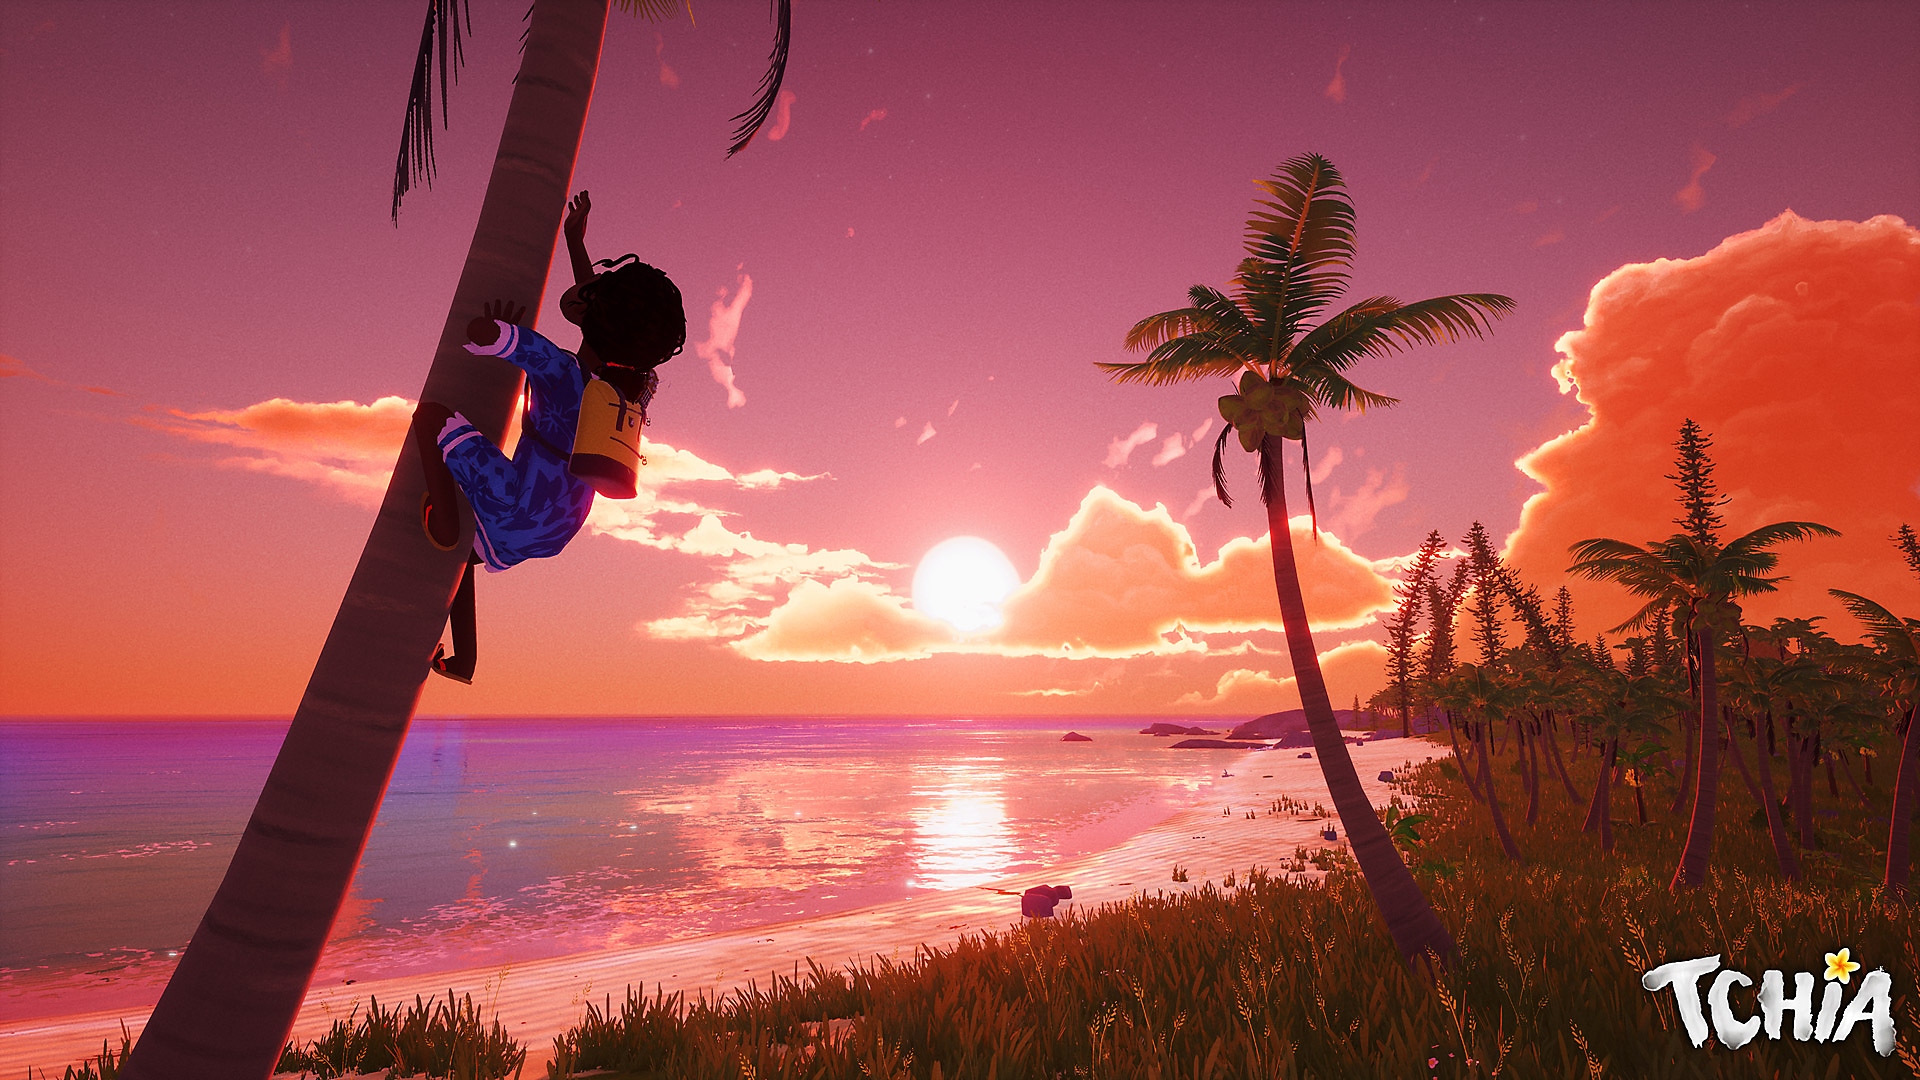 لقطة شاشة لـ Tchia تظهر فيها إحدى الشخصيات تتسلق شجرة مع مشهد جميل لغروب الشمس على بعد مسافة